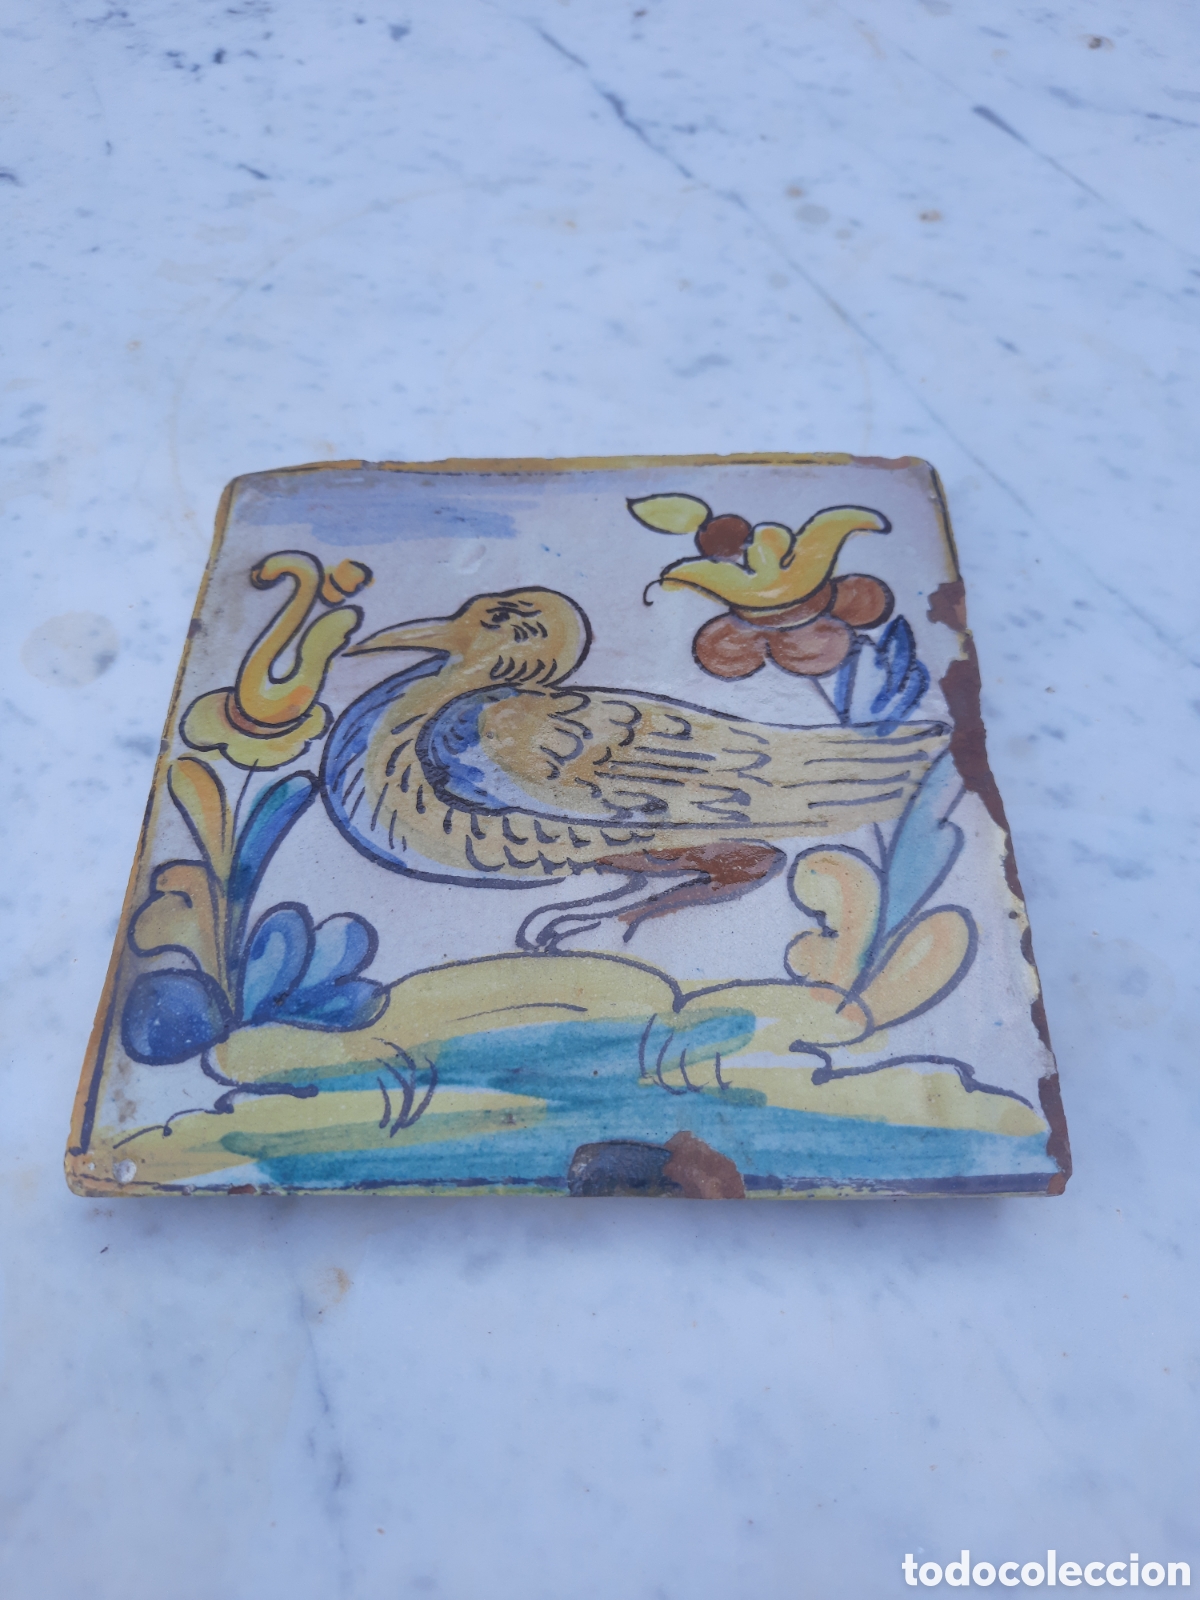 azulejo cerámica catalana - Compra venta en todocoleccion